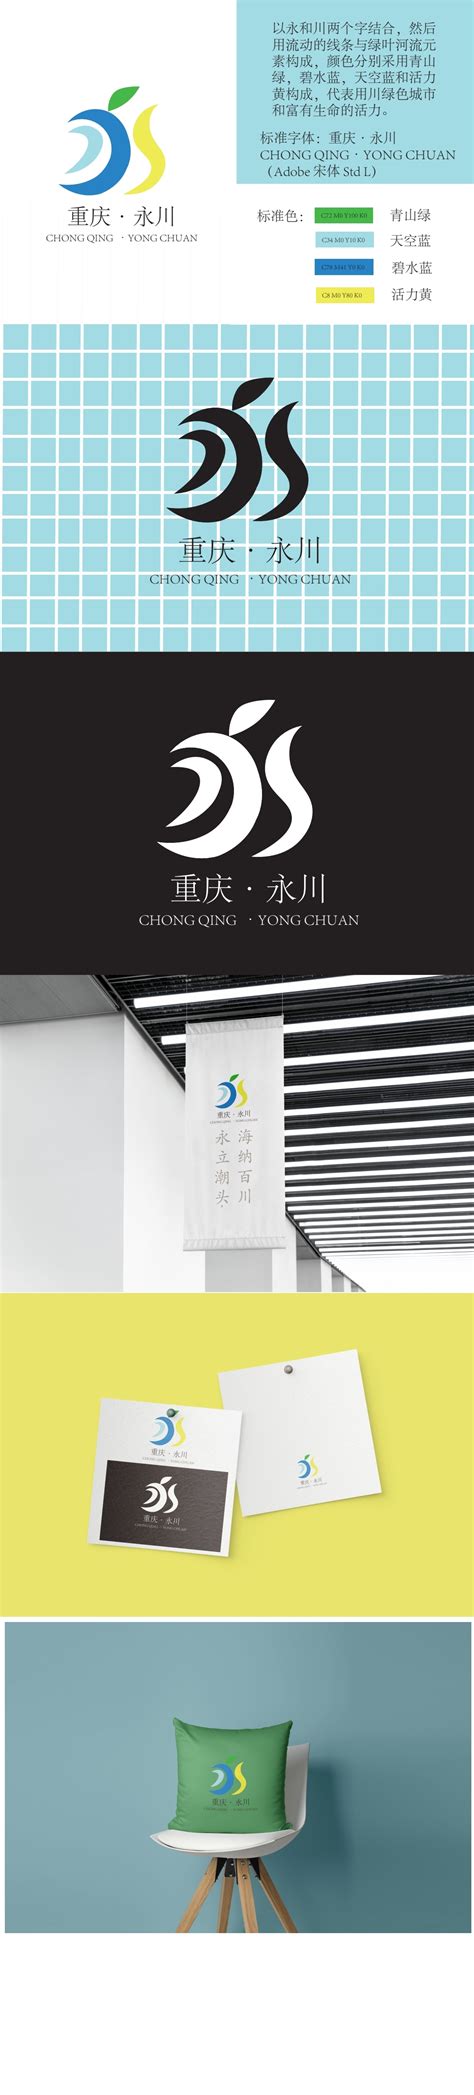 【对外交流】永川职业教育中心“3+2”学生到我院参观 - 新闻中心 - 重庆能源职业学院